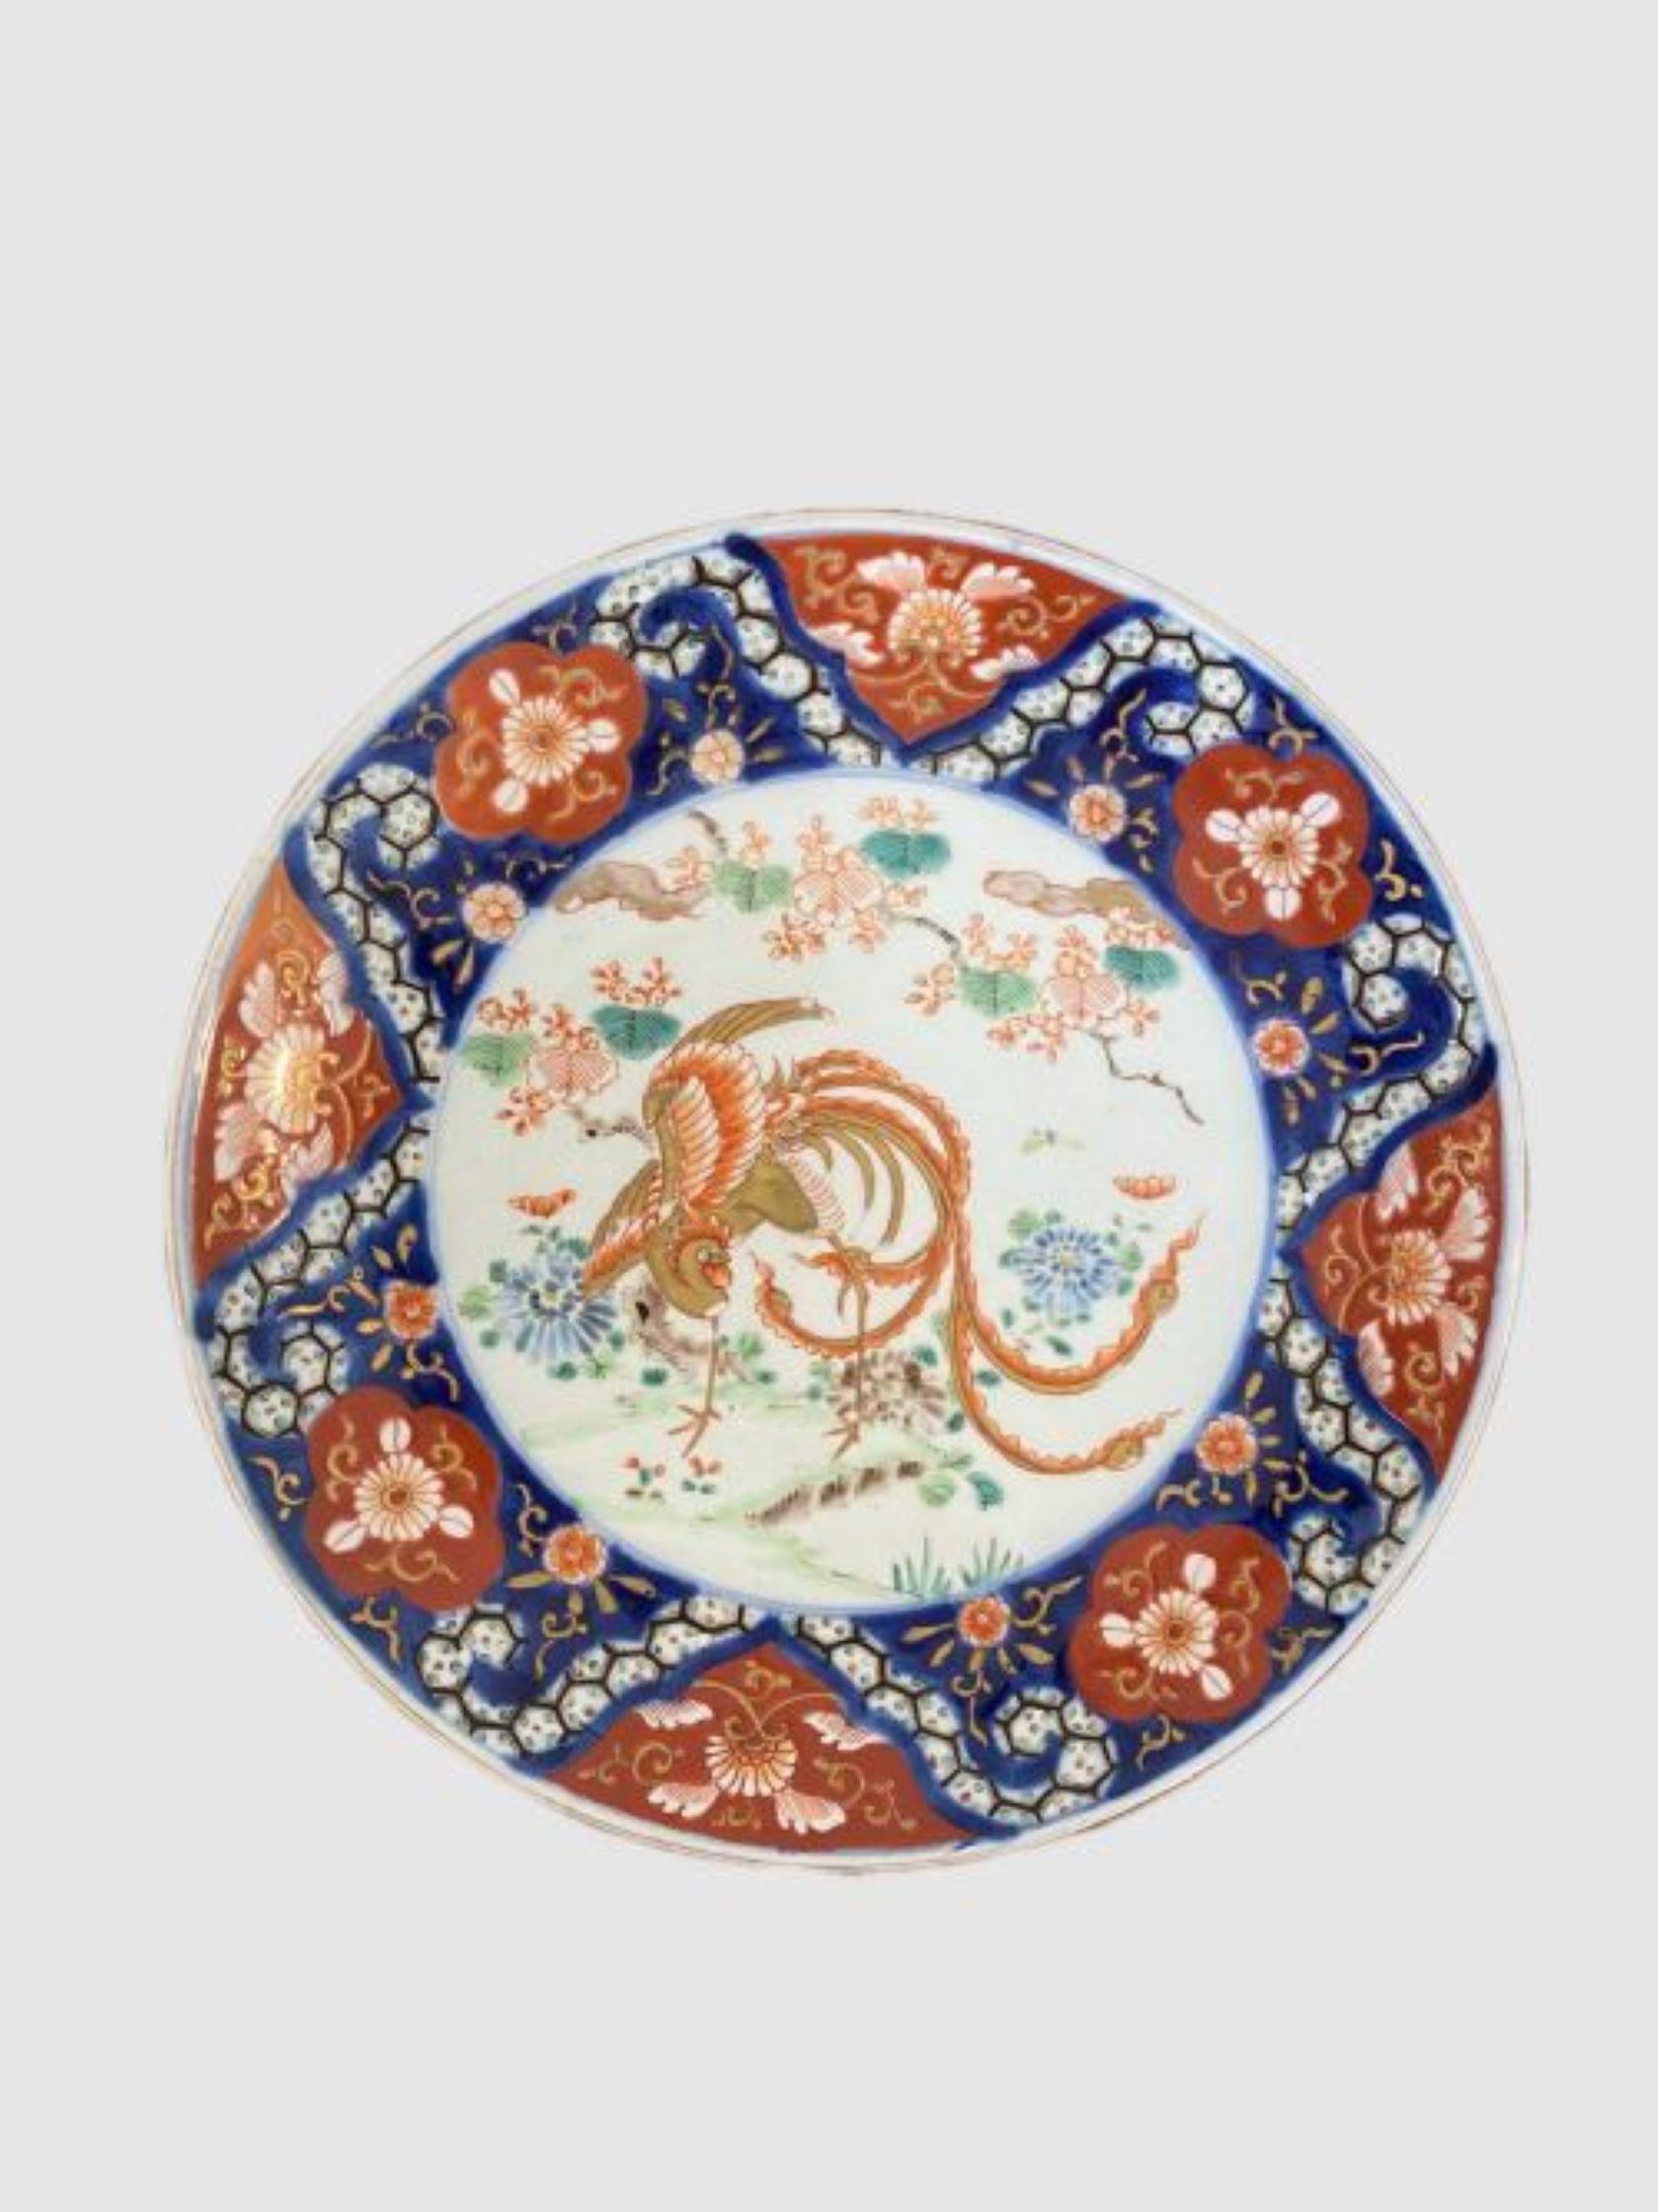 Assiette imari japonaise ancienne de qualité Assiette imari japonaise ancienne de qualité peinte à la main avec des fleurs, des feuilles, des arbres et un grand oiseau décoré inhabituel au centre dans de magnifiques couleurs rouge, bleu, vert, blanc